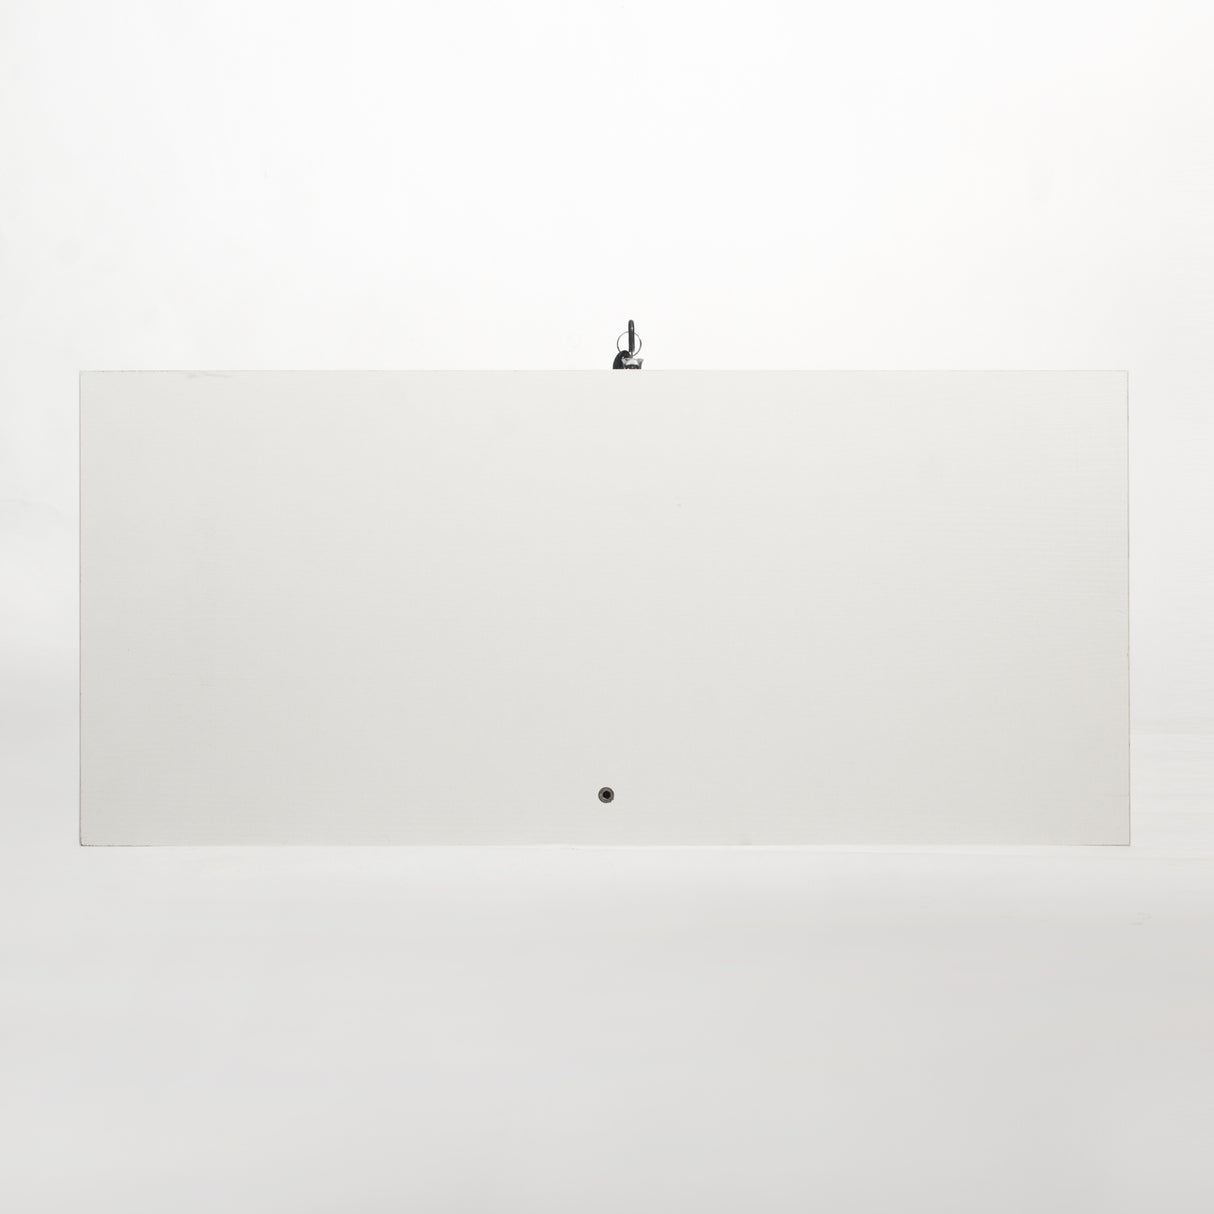 Two-door Glass Display Cabinet 3 Shelves with Door, Floor Standing Curio Bookshelf for Living Room Bedroom Office, 49.49” x 31.77”x 14.37”, White Home Elegance USA